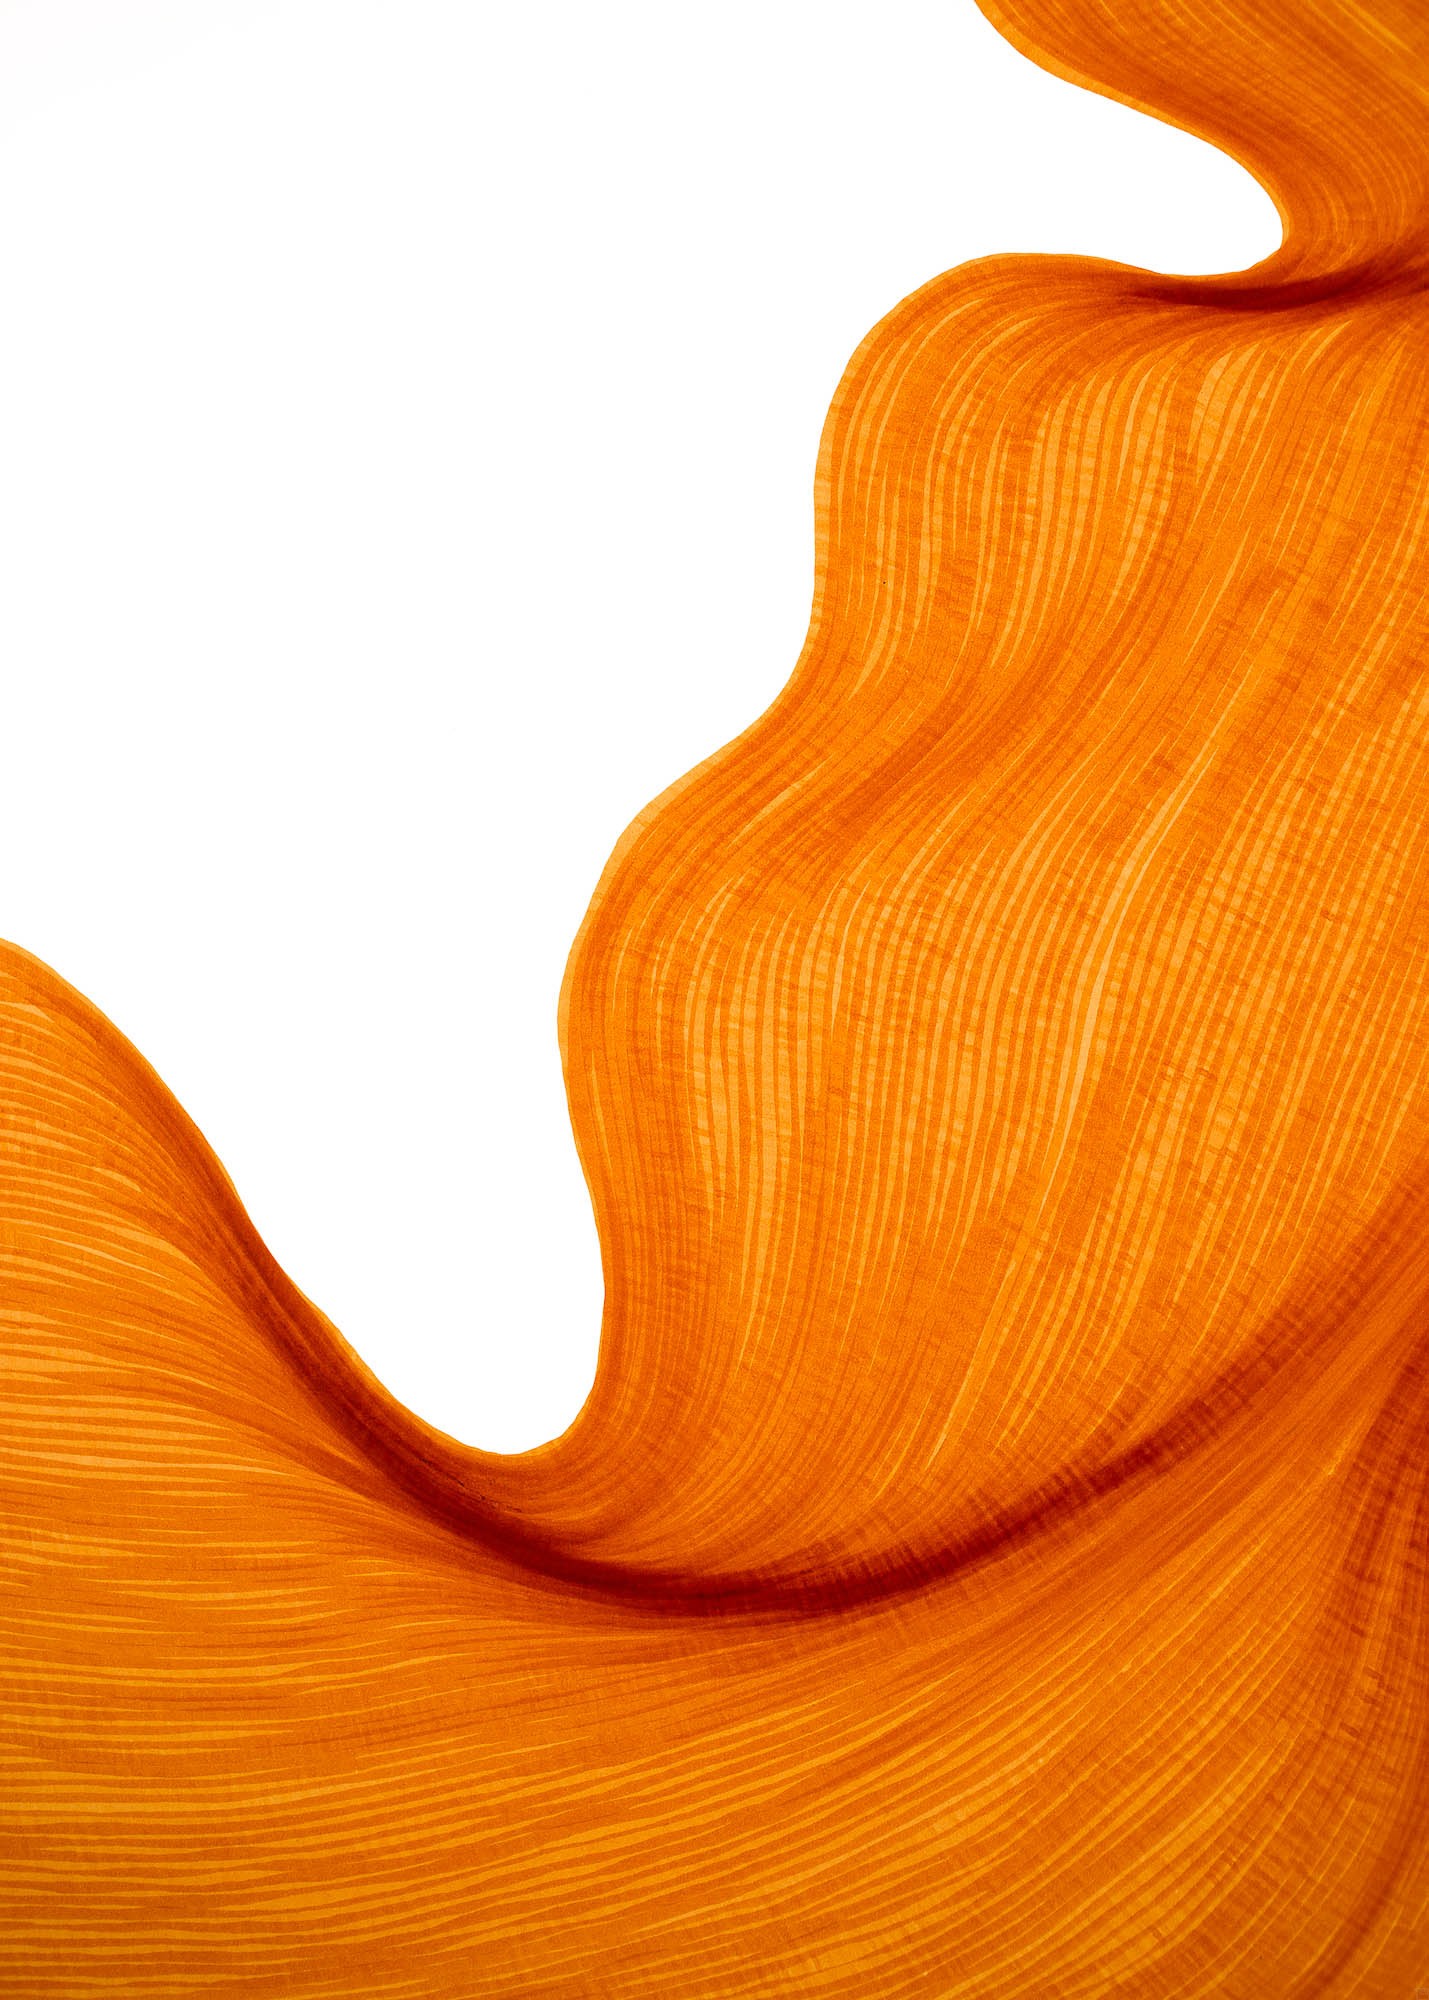 Bubbly Orange | Lali Torma | Zeichnung | Kalligraphie Tinte auf Papier - Detail